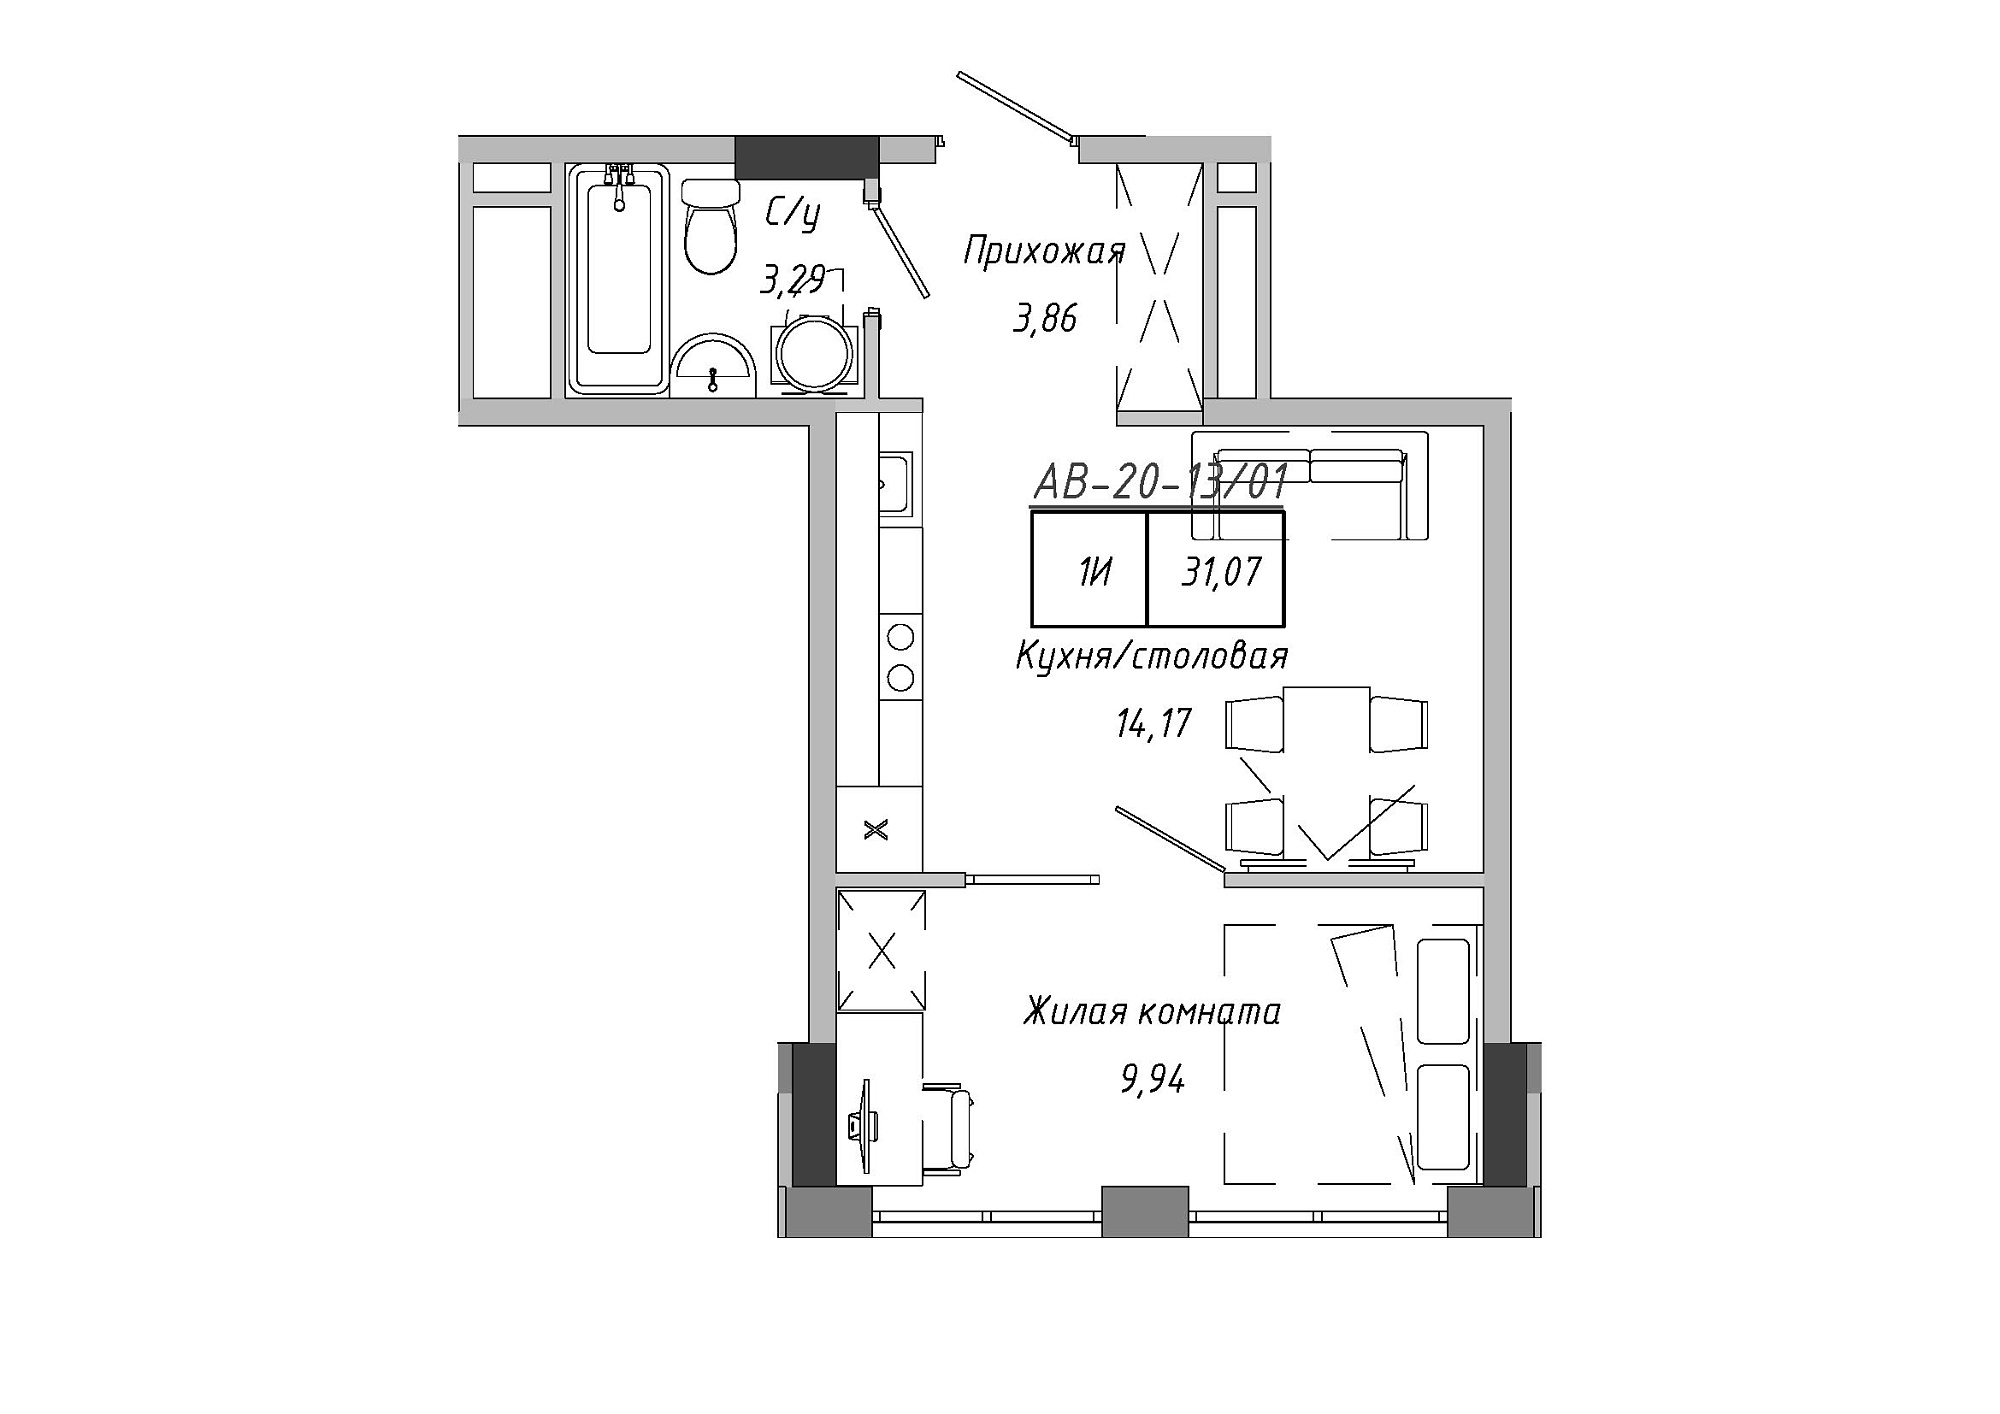 Планировка 1-к квартира площей 31.07м2, AB-20-13/00101.